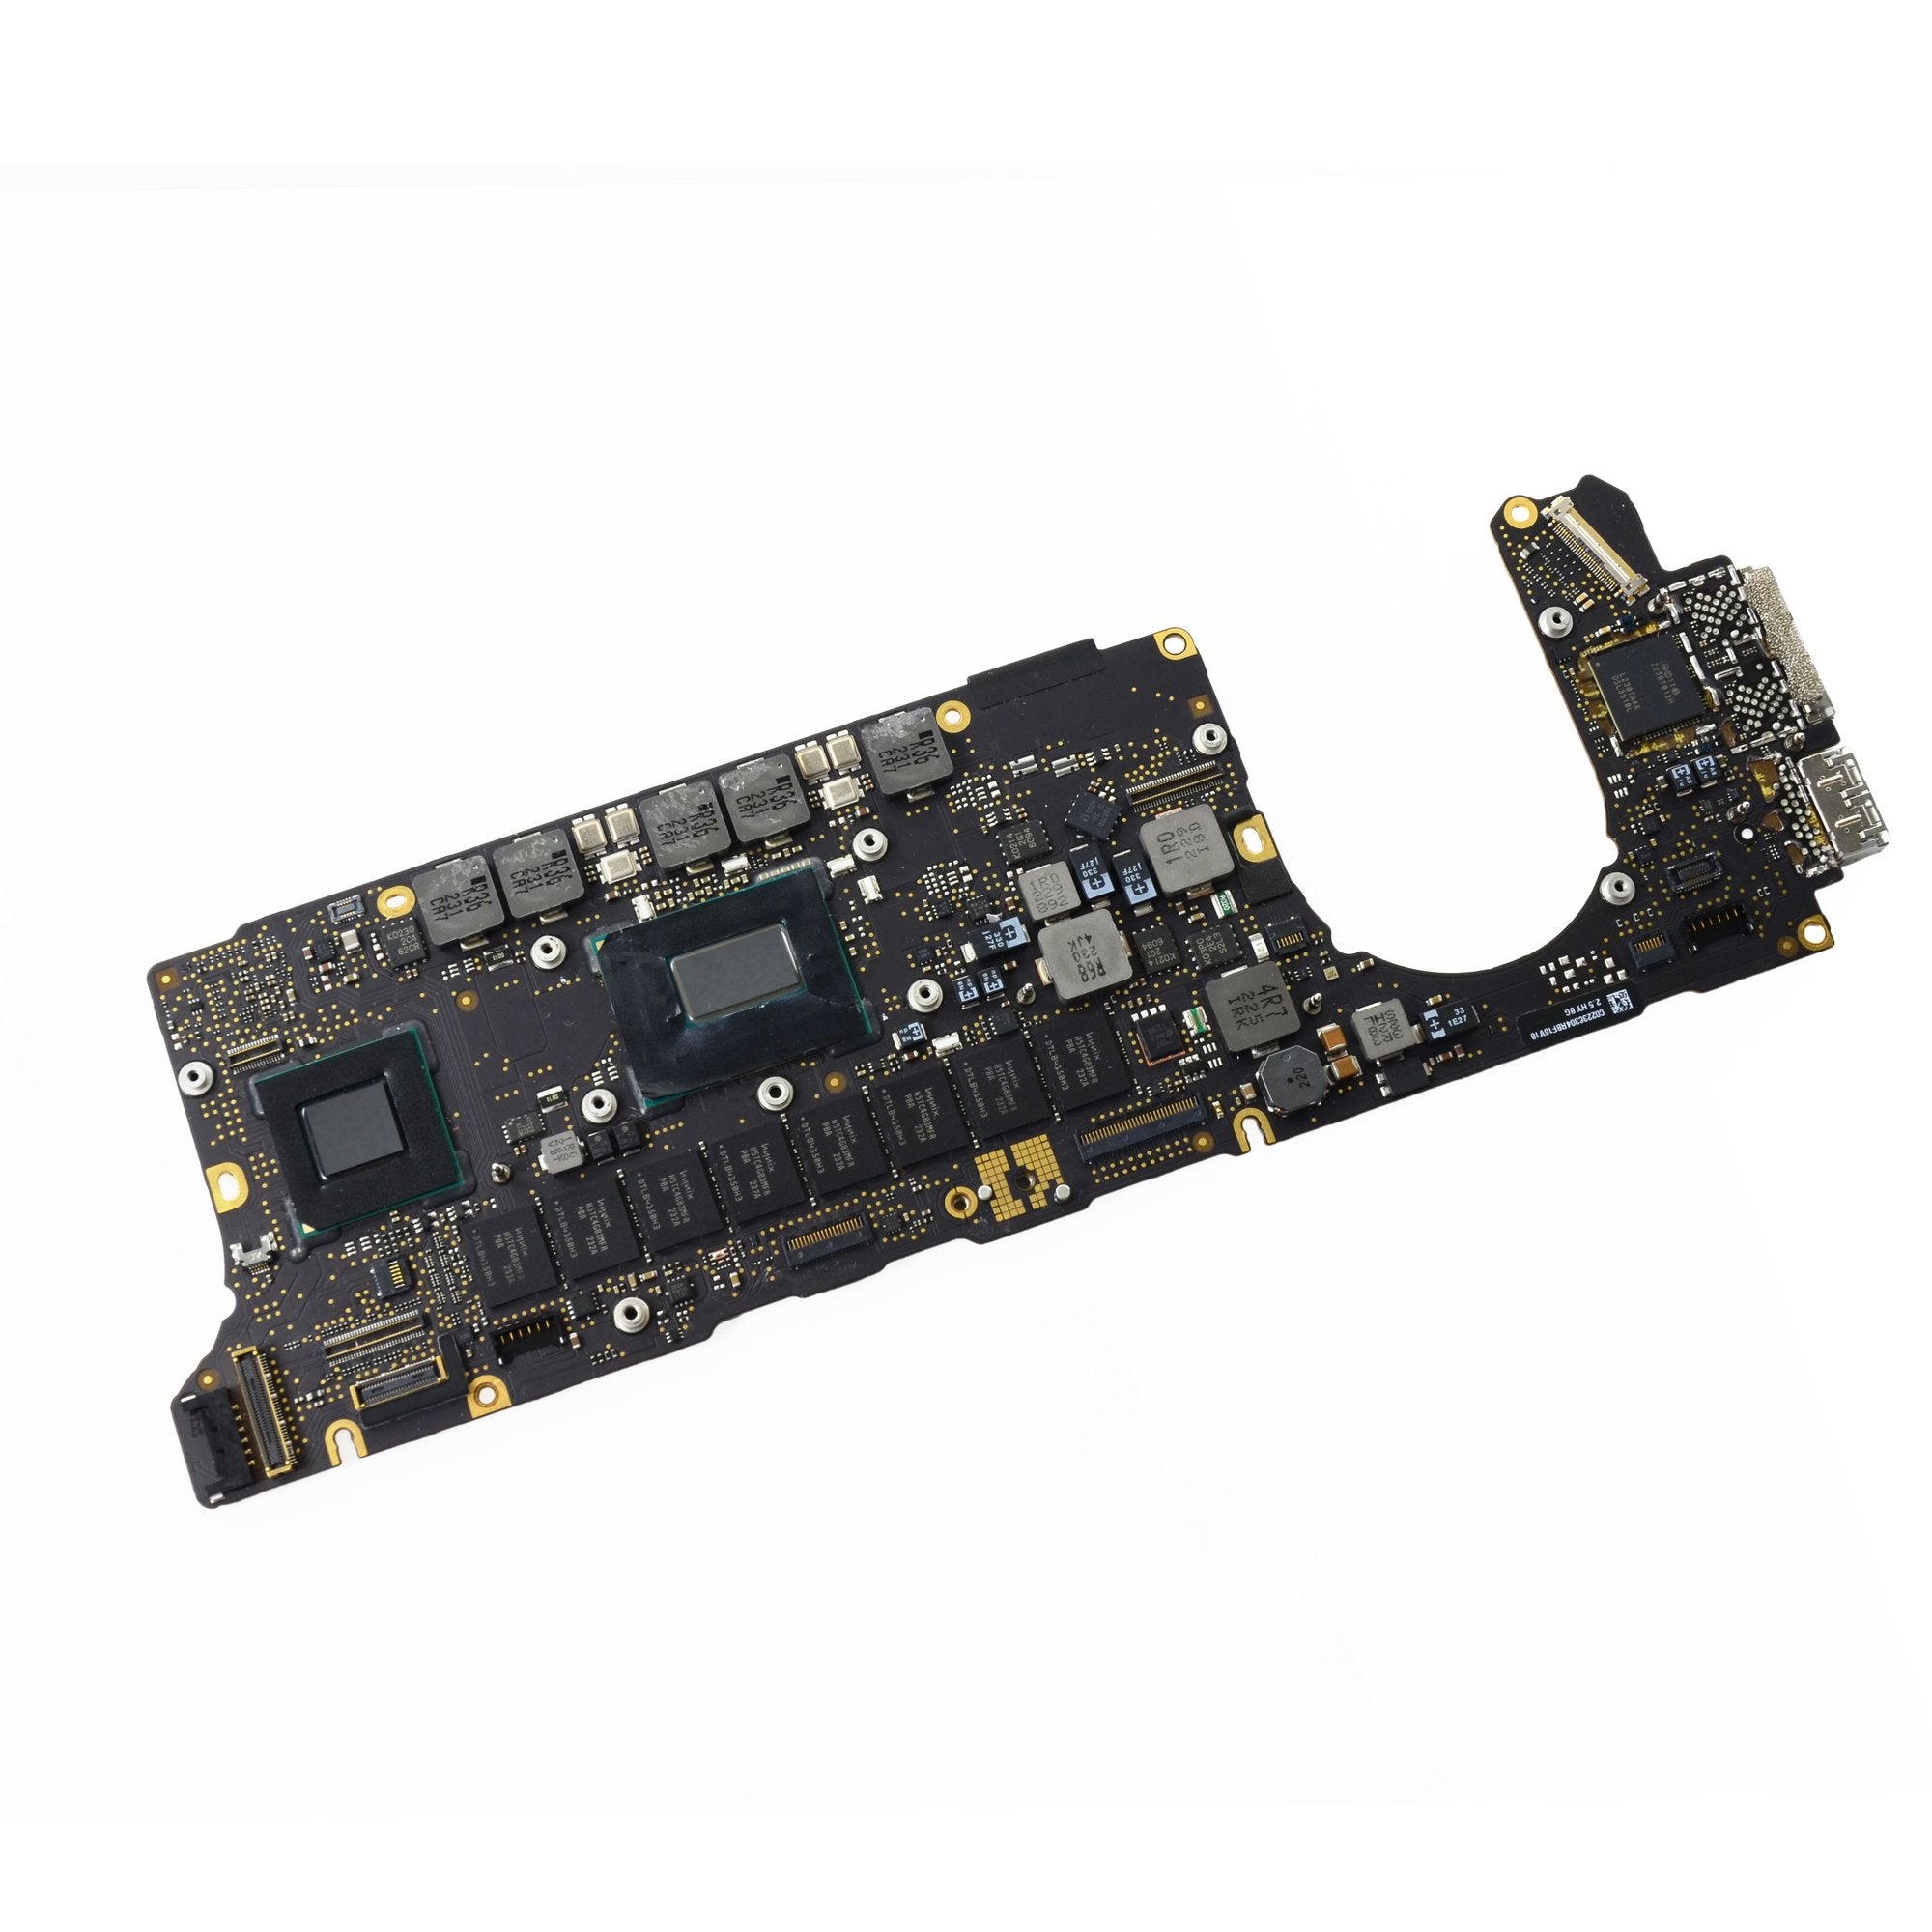 MacBook Pro 13" Retina (Late 2012) 2.5 GHz Logic Board